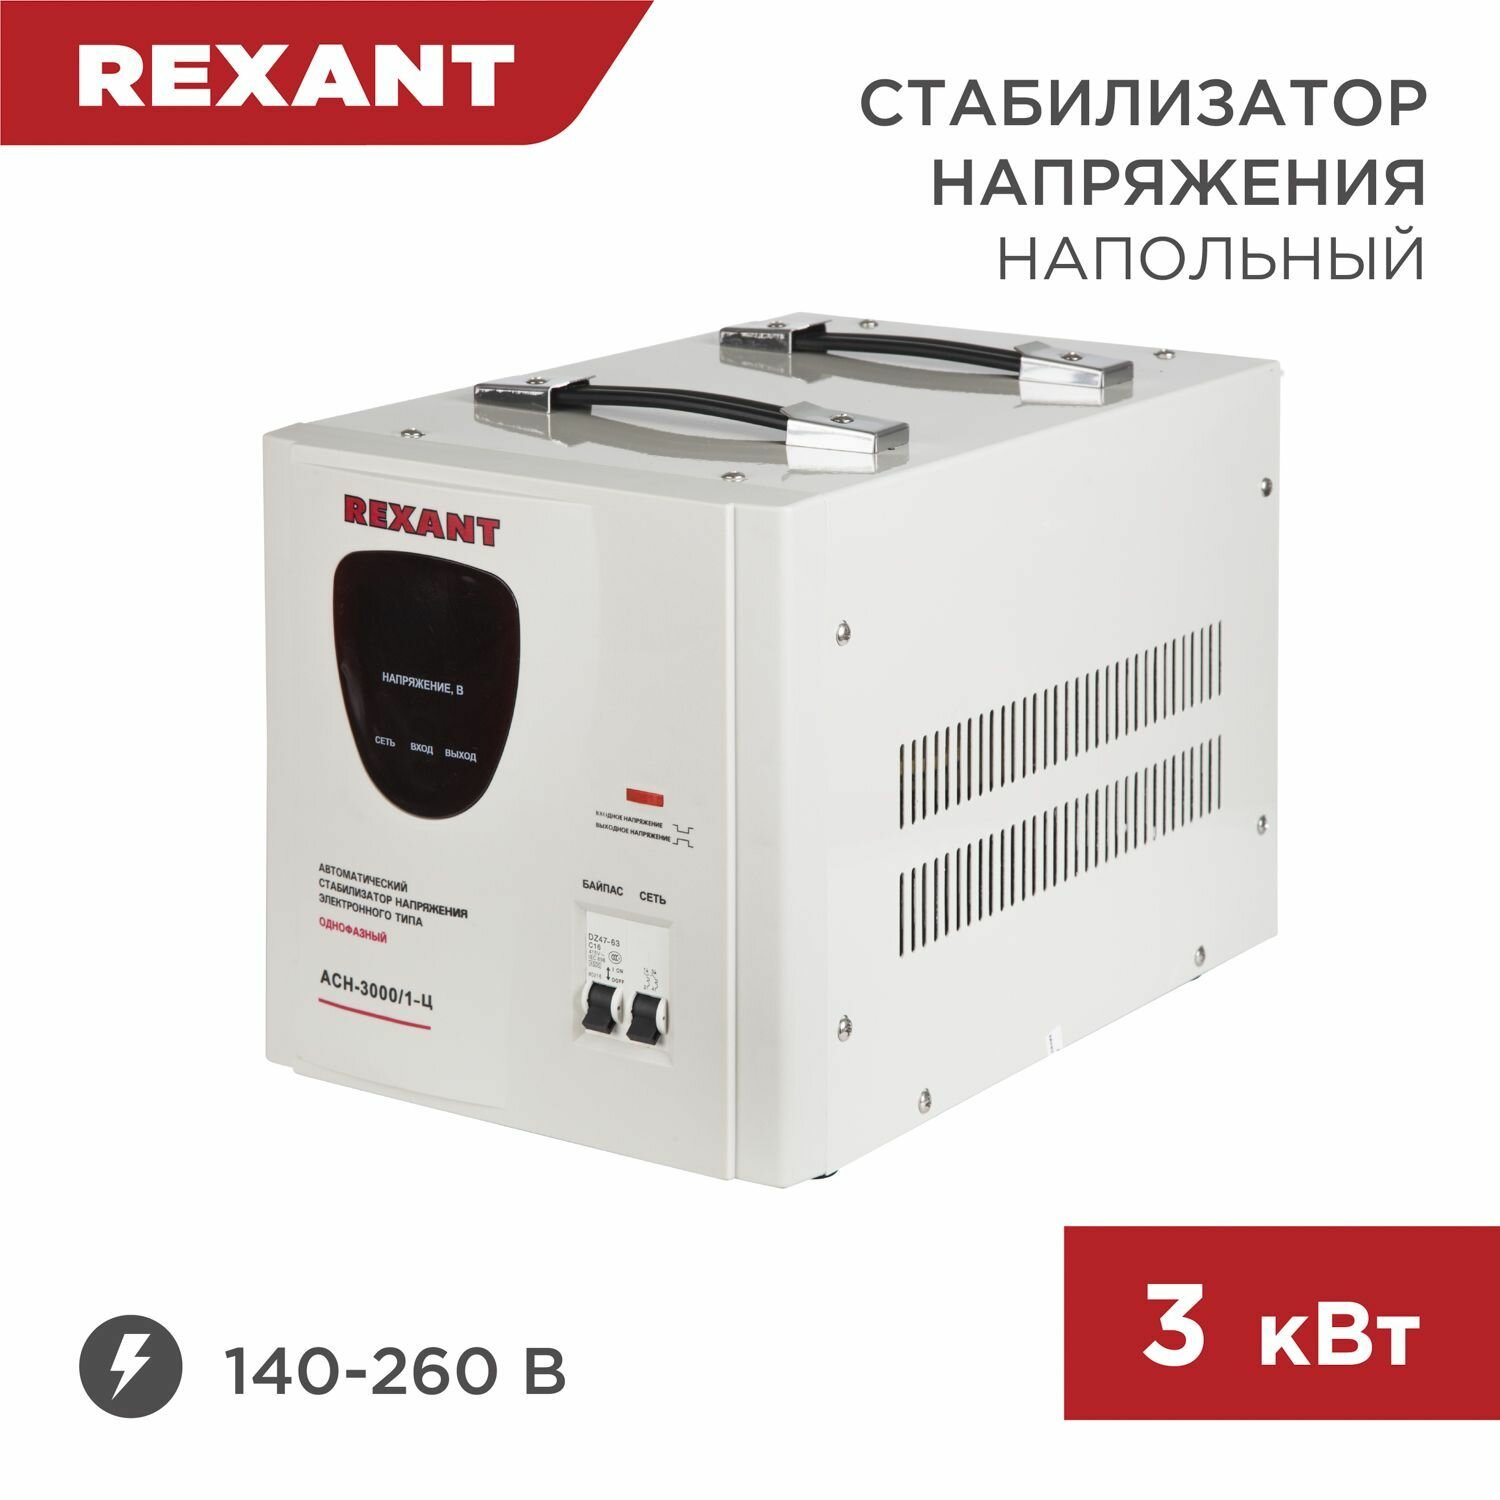 Стабилизатор напряжения Rexant AСН-3000/1-Ц